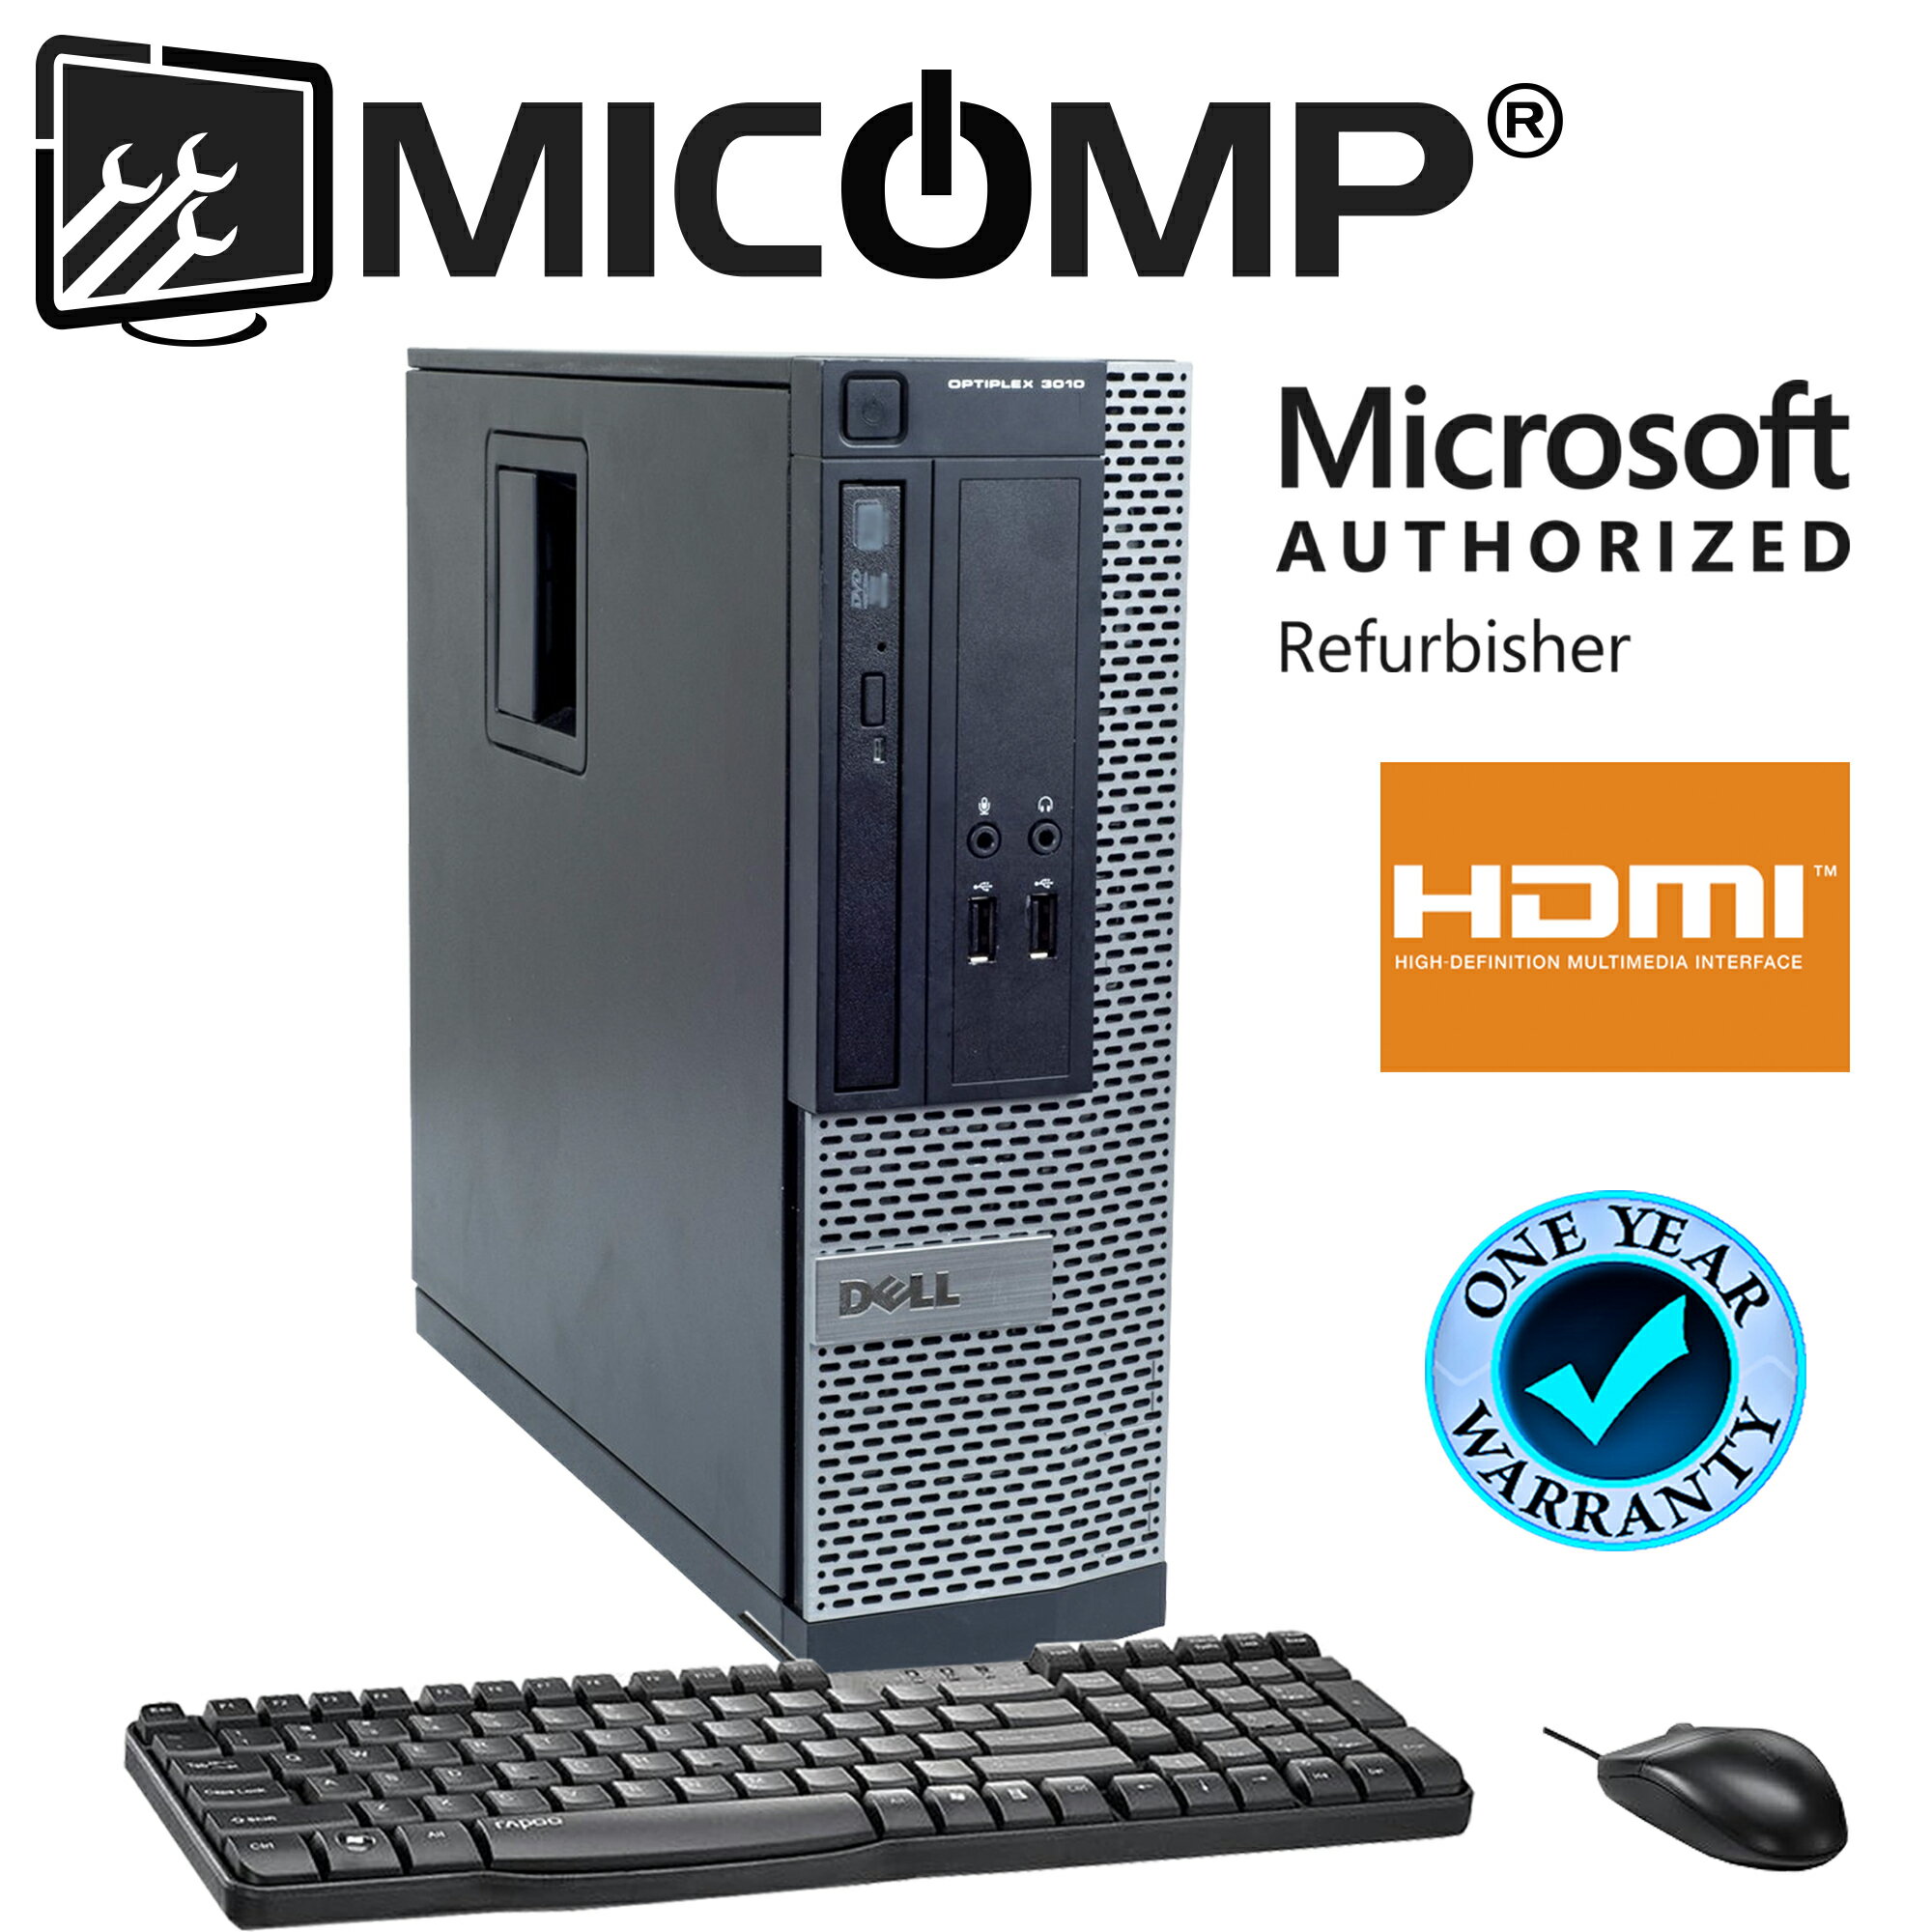 MICOMP: Dell Optiplex PC 3010 Small Form Factor I5-3470 Quad Core 3